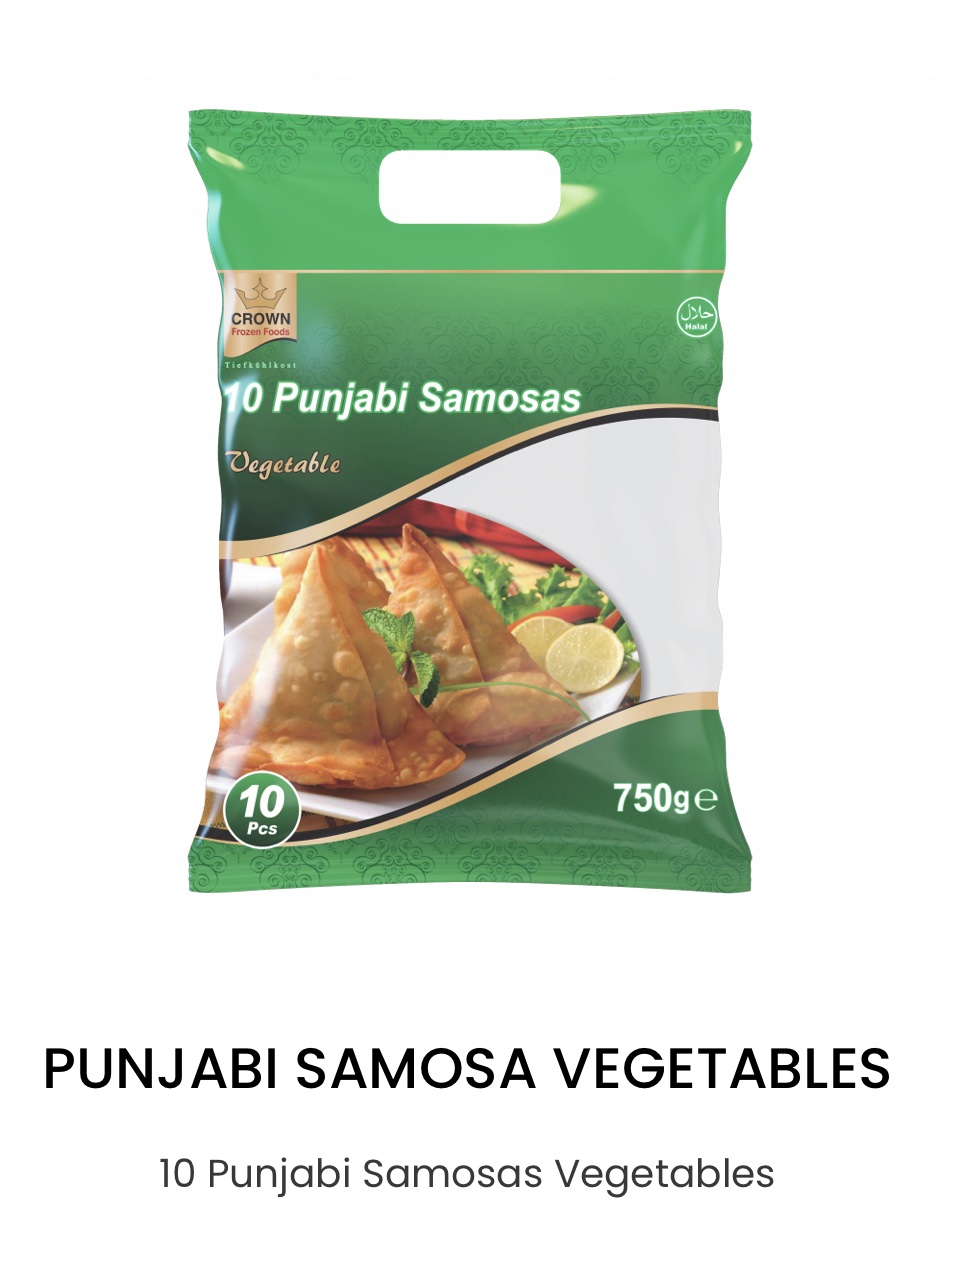 Crown 10 Punjabi Samosas Vegetables 750g